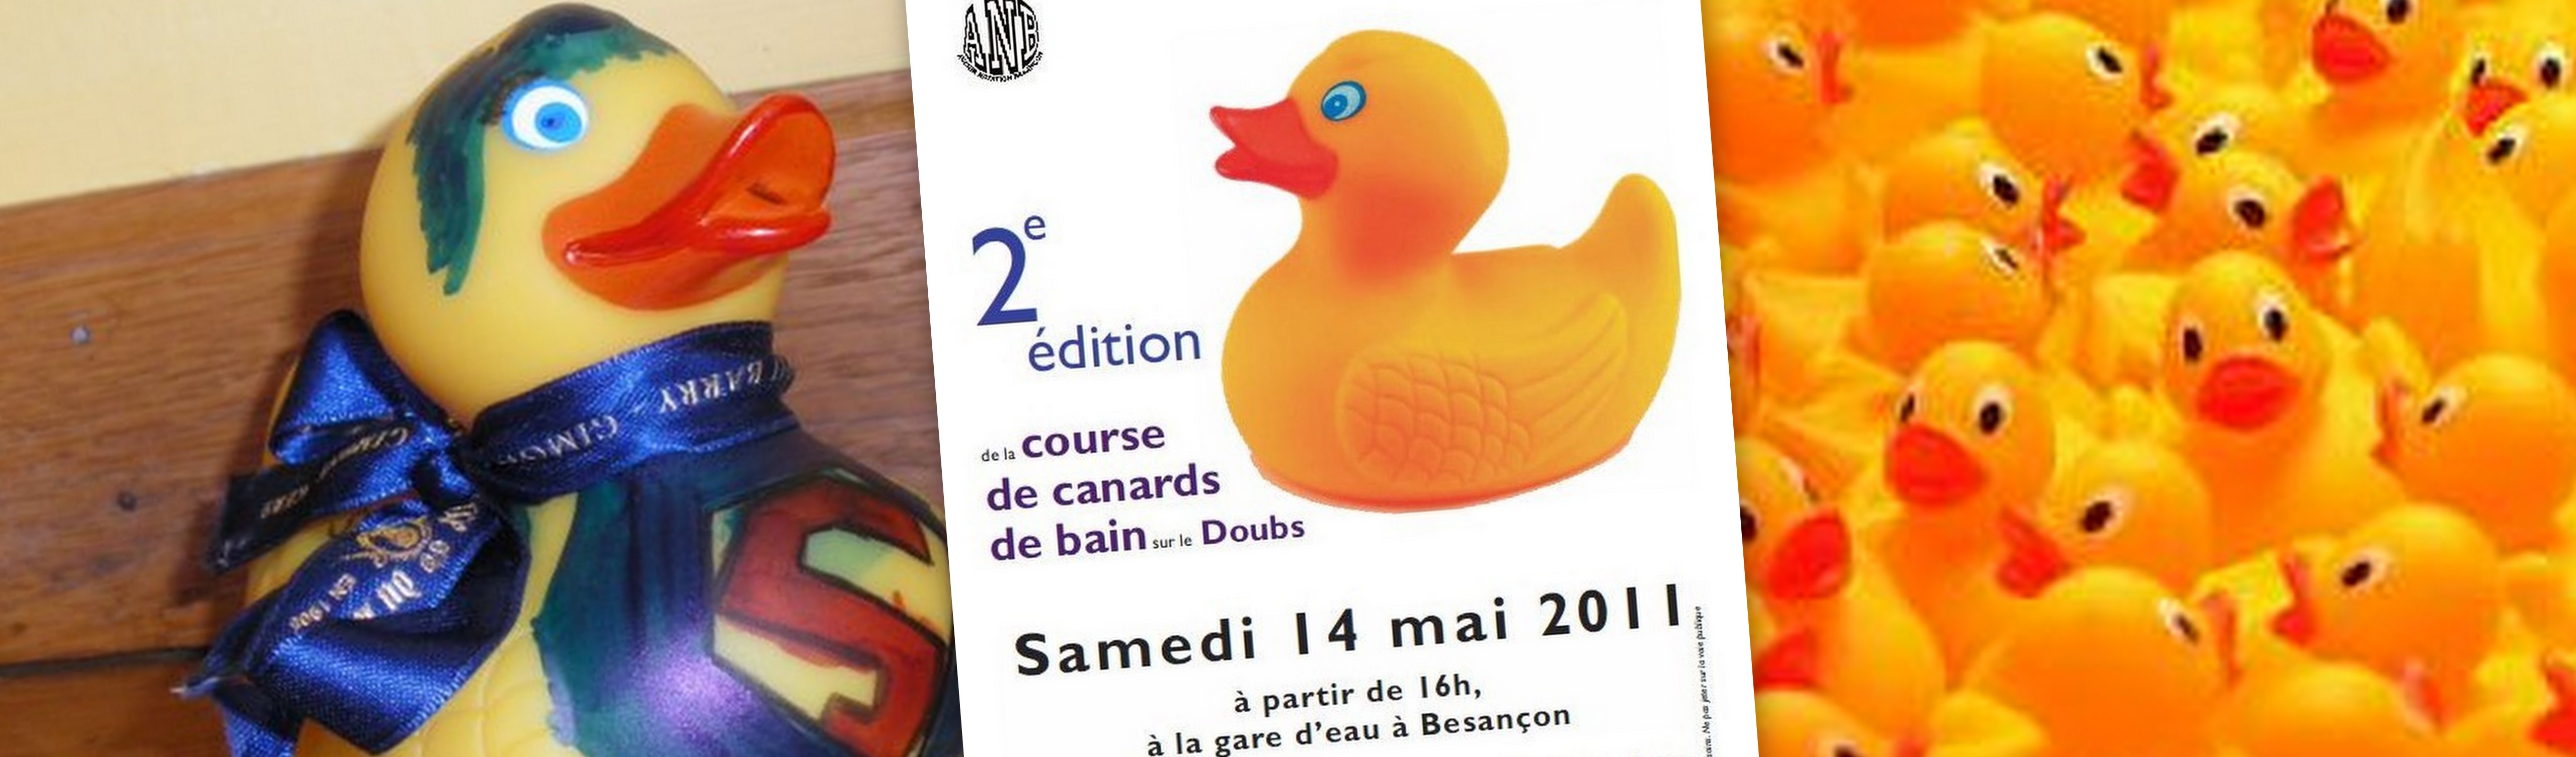 10 comptage des canards-Fun Bain de l'apprentissage des jouets-Course Canard idée de collecte de fonds 